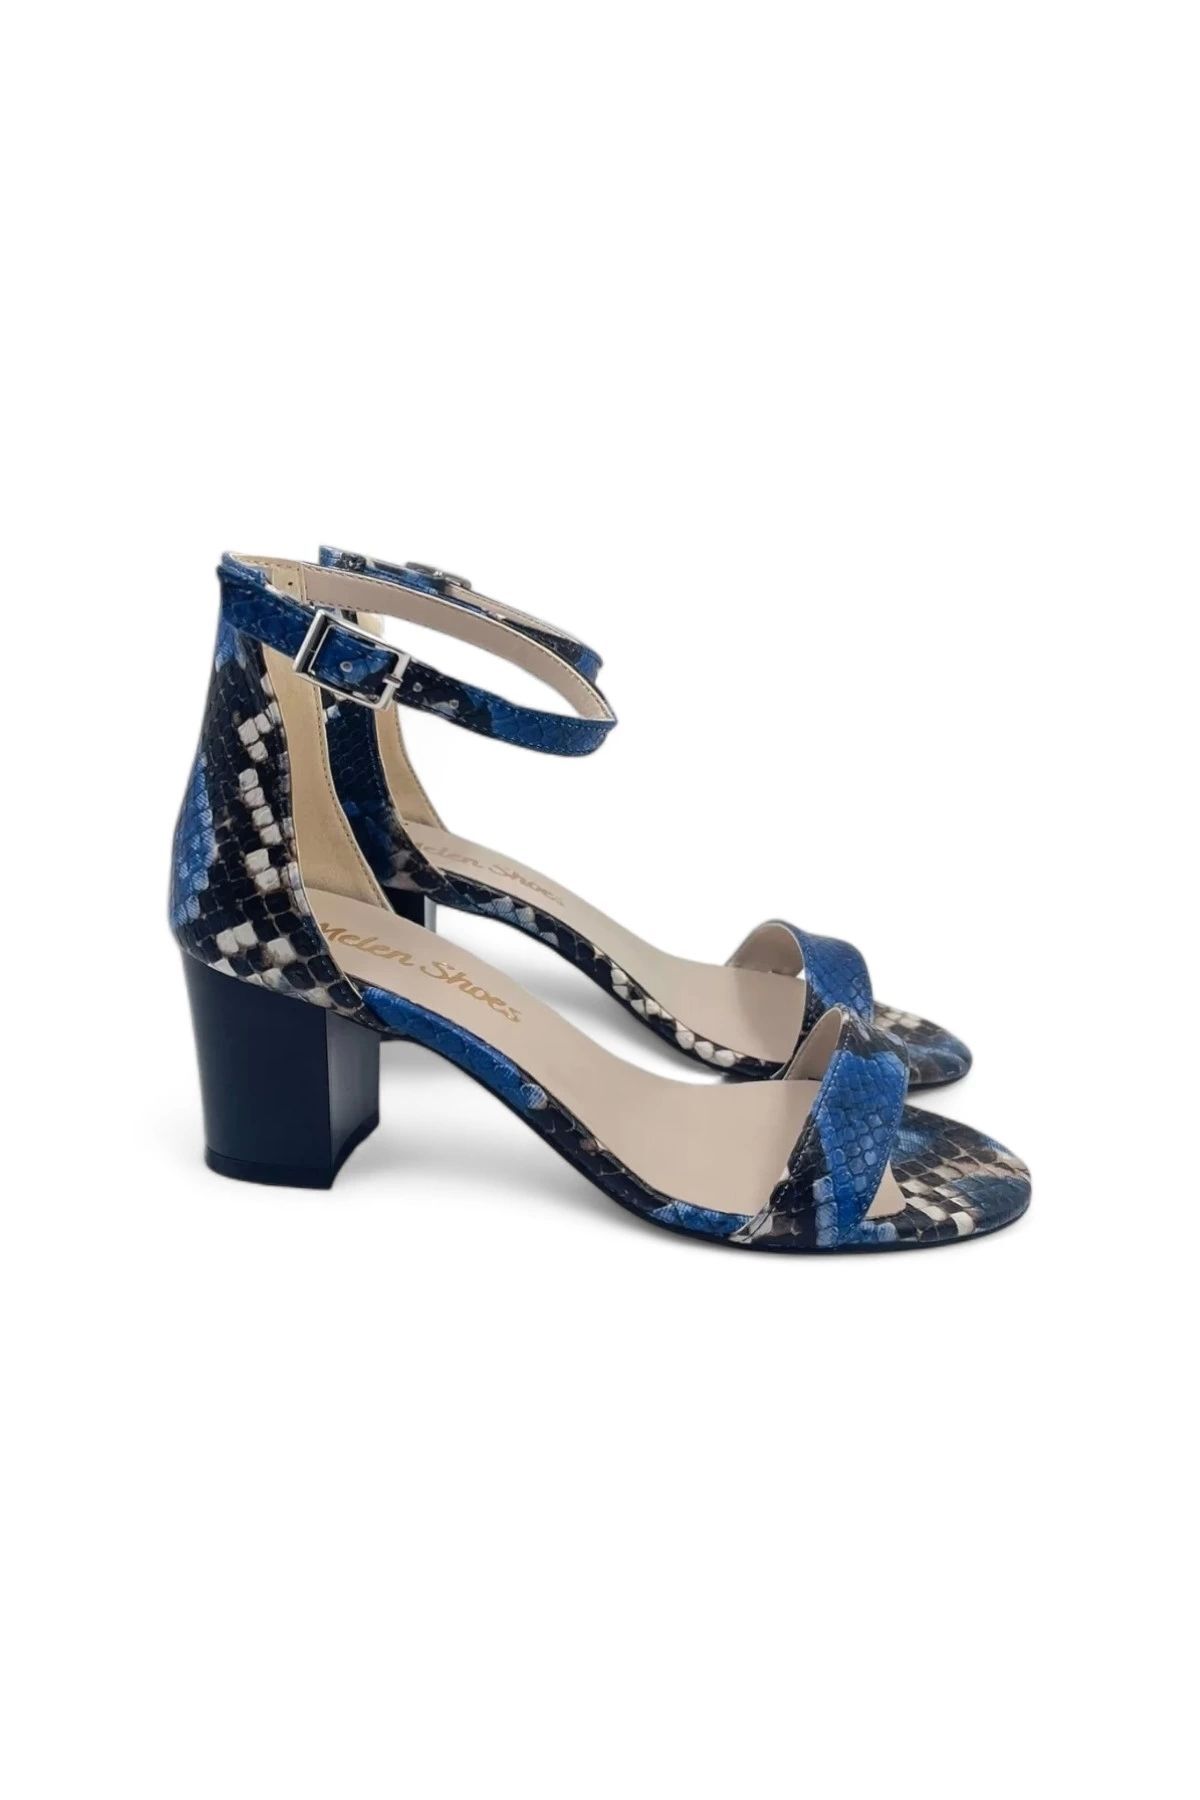 Melen Shoes Lilac Mavi Kadın Tek Bantlı Şık Ve Zarif Topuklu Ayakkabı